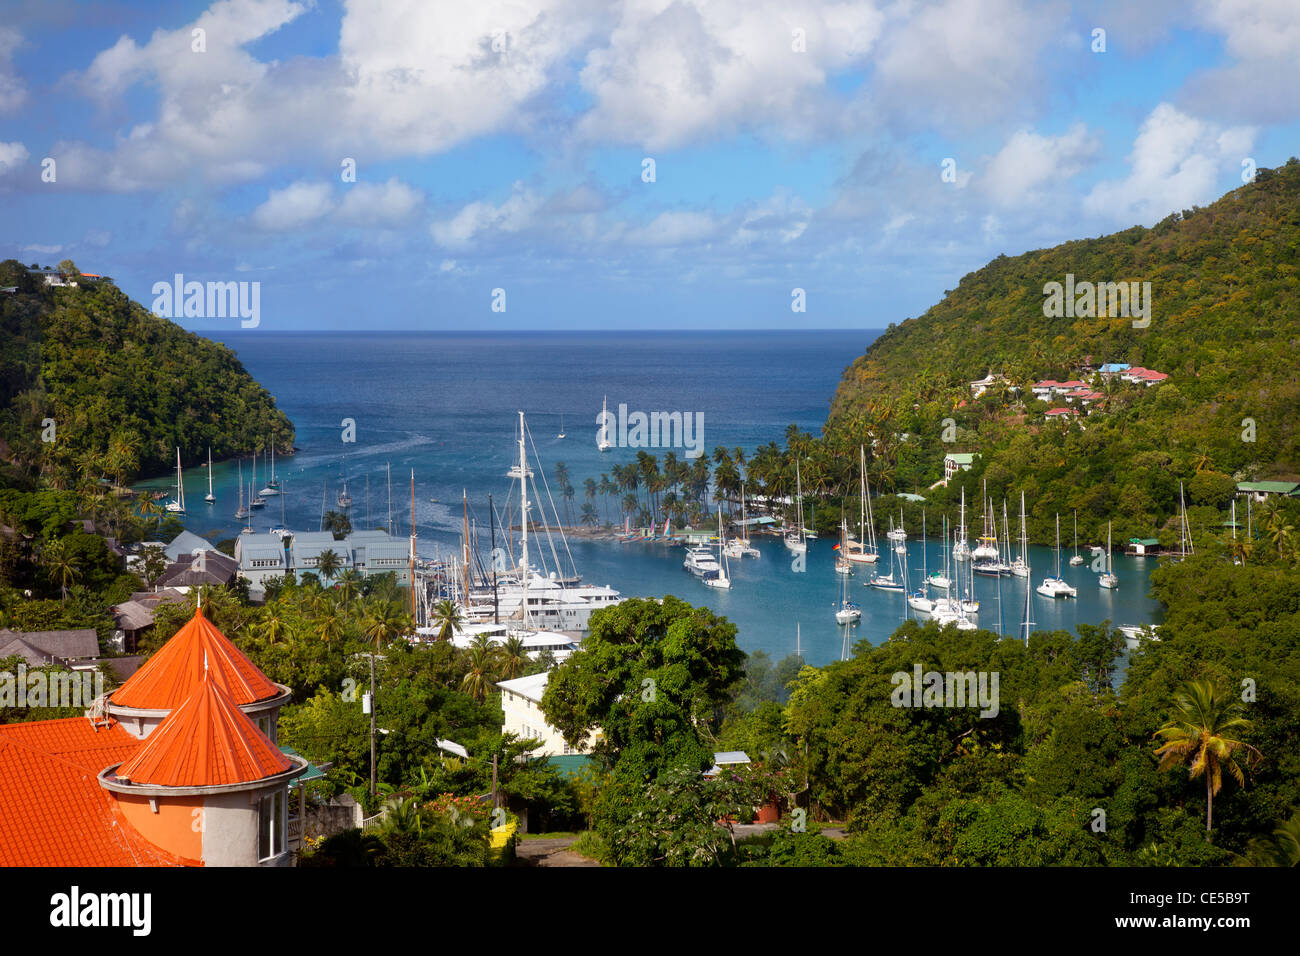 Petit port de Marigot Bay, sur la côte ouest de Sainte-Lucie, West Indies Banque D'Images